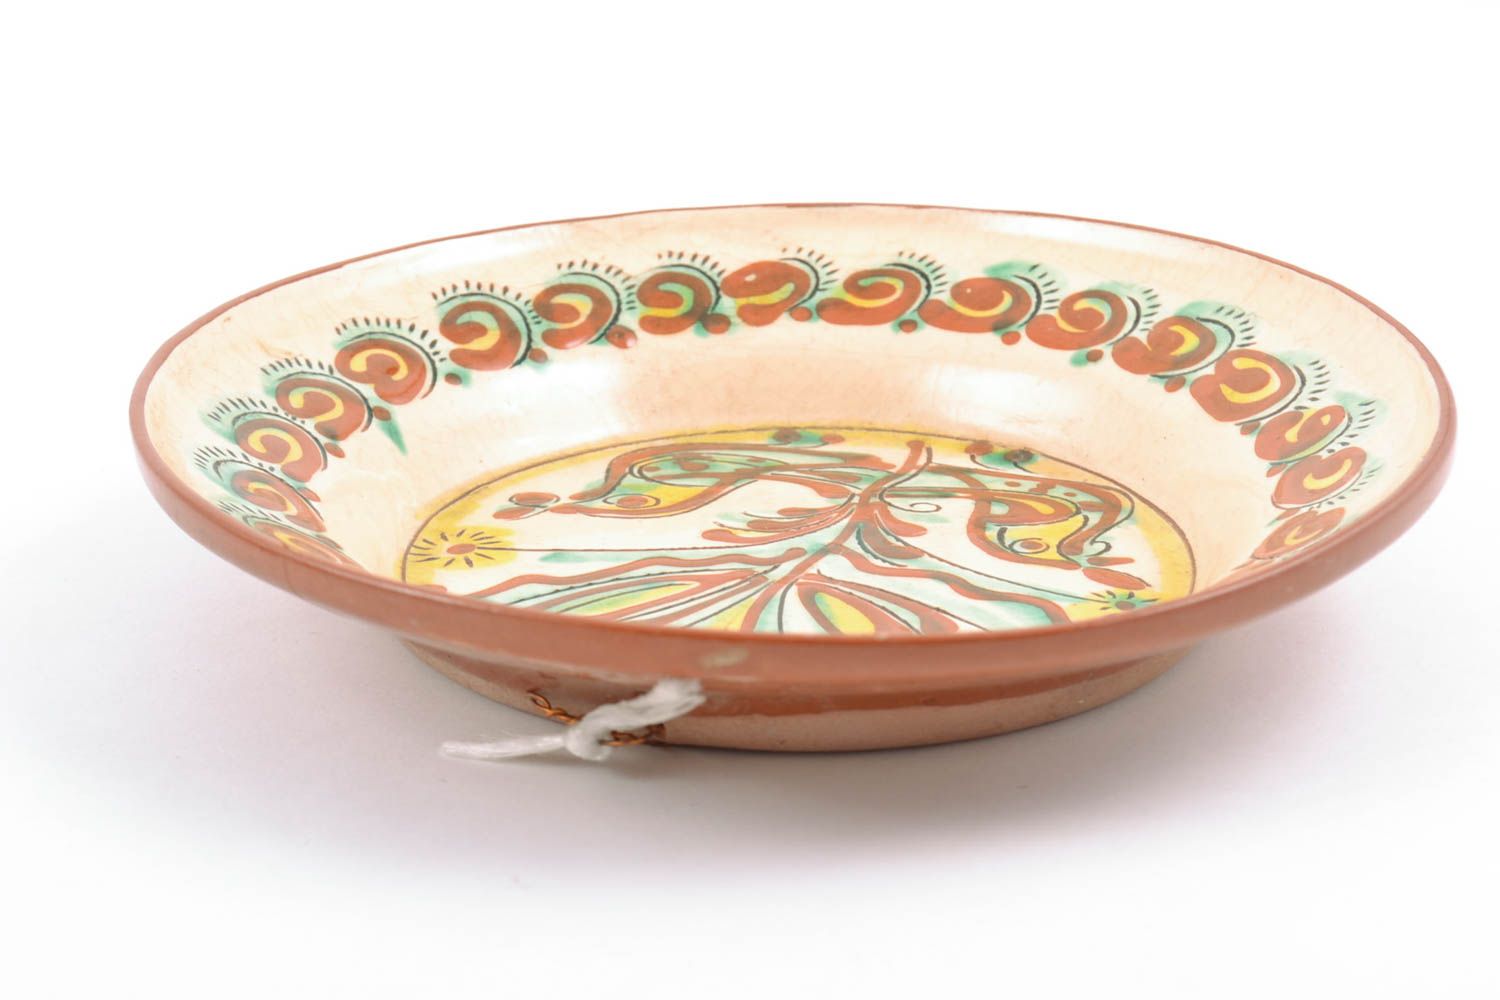 Декоративная тарелка глиняная расписанная вручную и покрытая глазурью небольшая фото 3